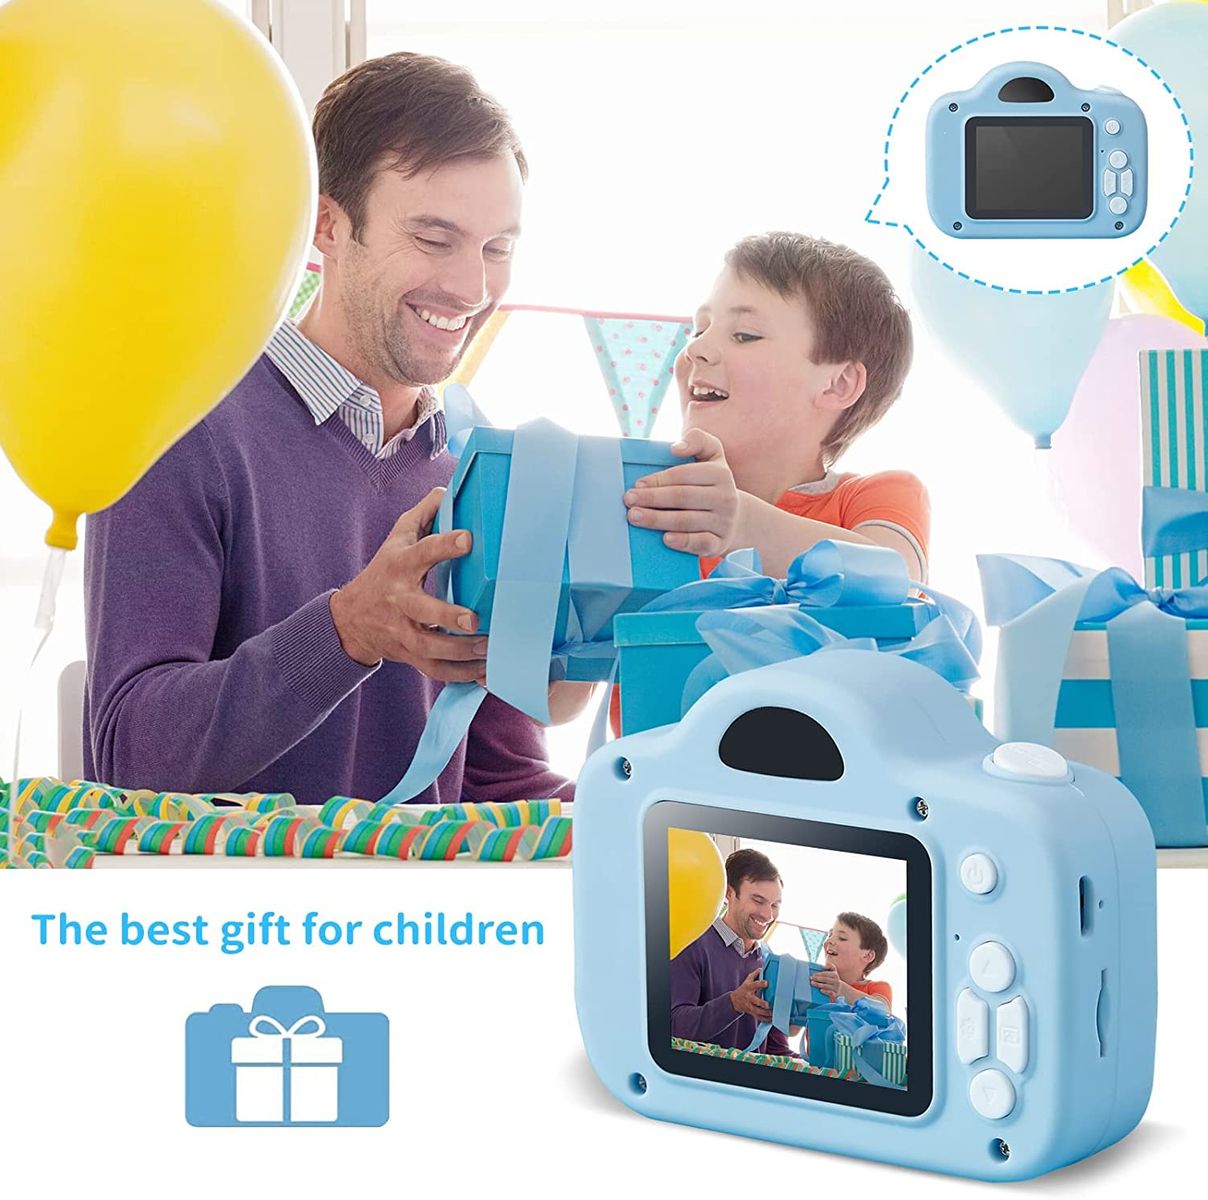 iPatio KinderKamera Digitalkamera Kinder Kamera für 3 bis 12 Jahre Alter Jungen und Mädchen Spielzeug Geschenke Fotoapparat Kinder mit 2,0 Zoll Bildschirm/HD 1080P/32GB SD-Karte (Blau)